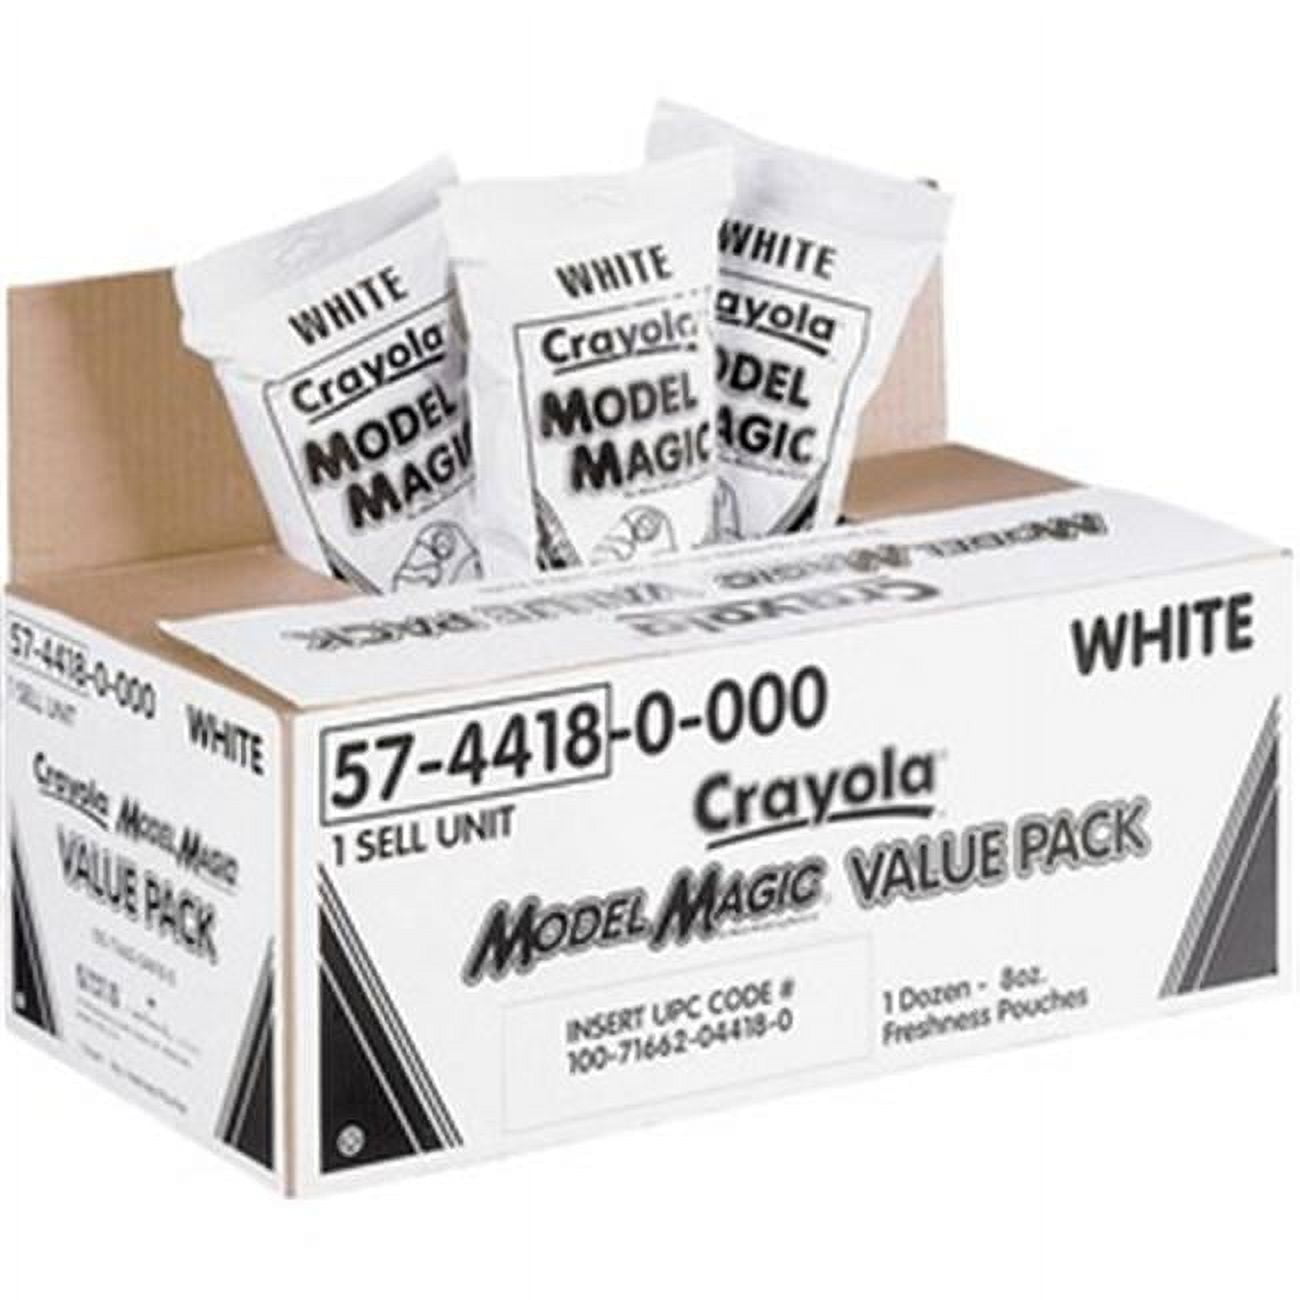 Crayola Model Magic Modeling Compound (White 4oz) - 376-402